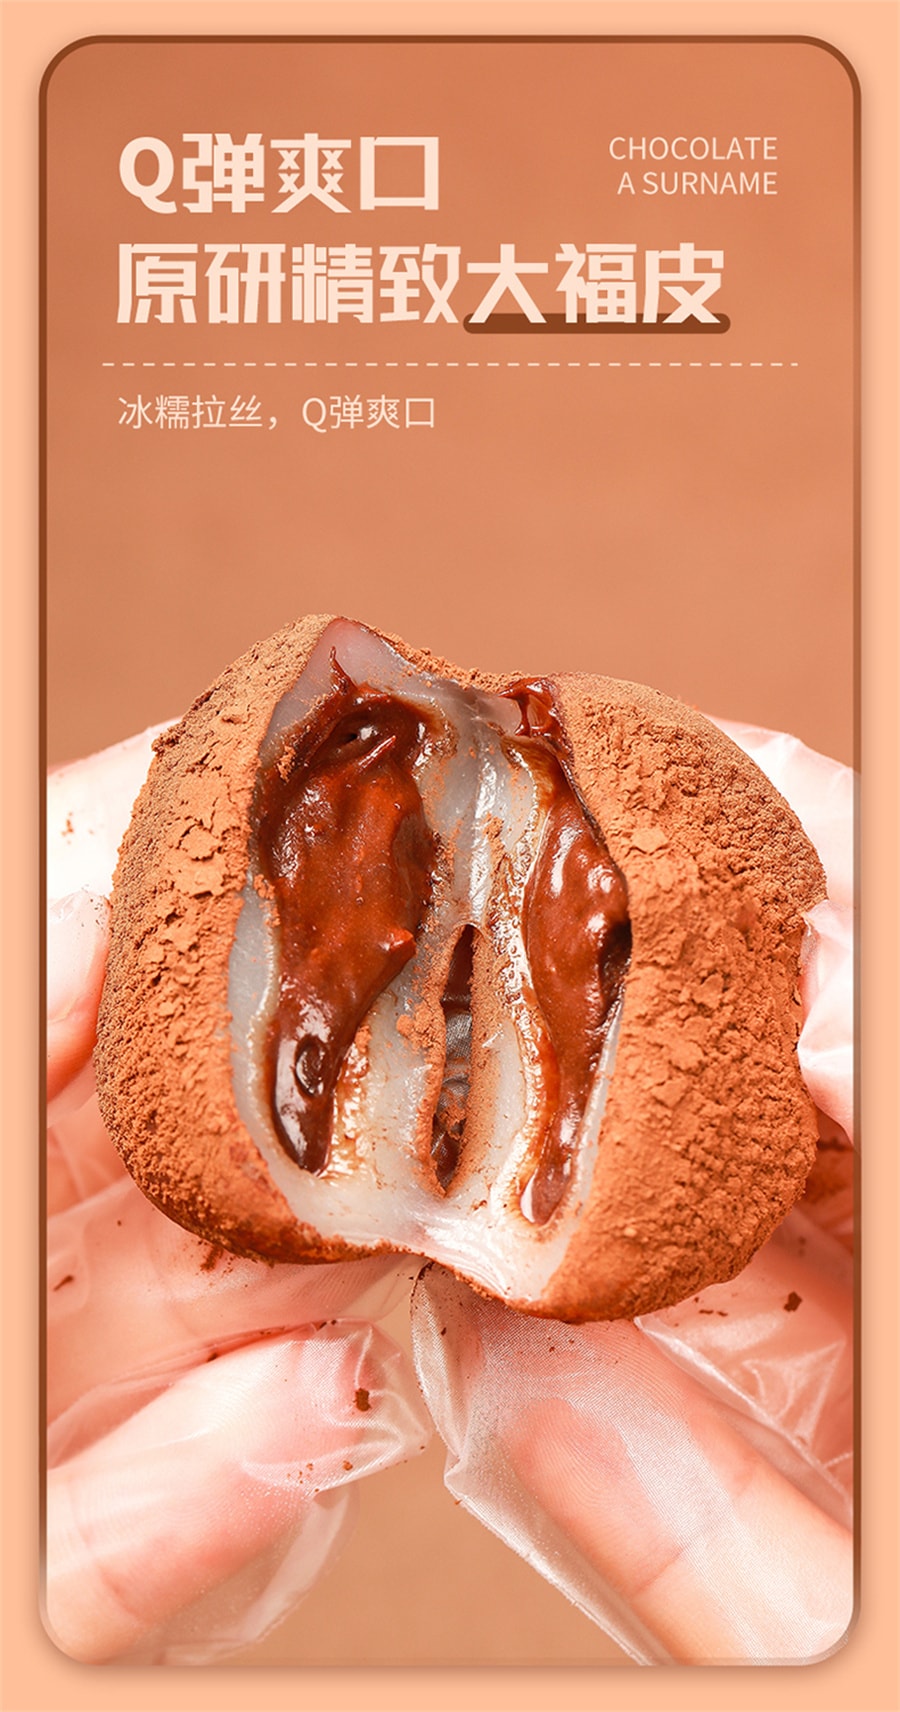 【中国直邮】 爪哇岛 和风生巧福团巧克力雪媚娘零食品大福下午茶零食麻薯 30g/个(巧克力味)